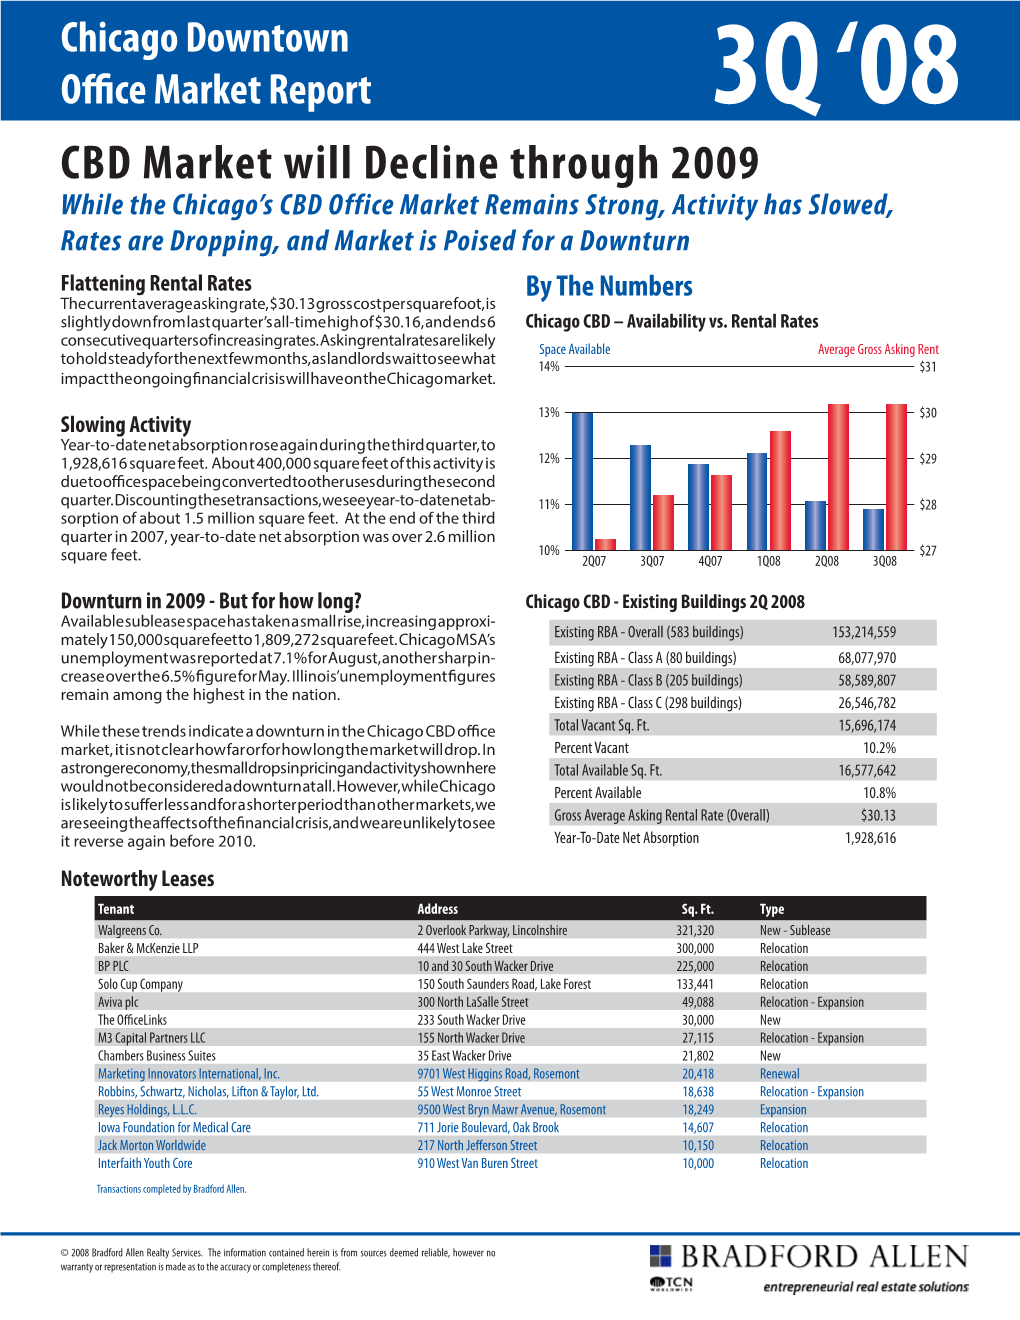 CBD Market Will Decline Through 2009